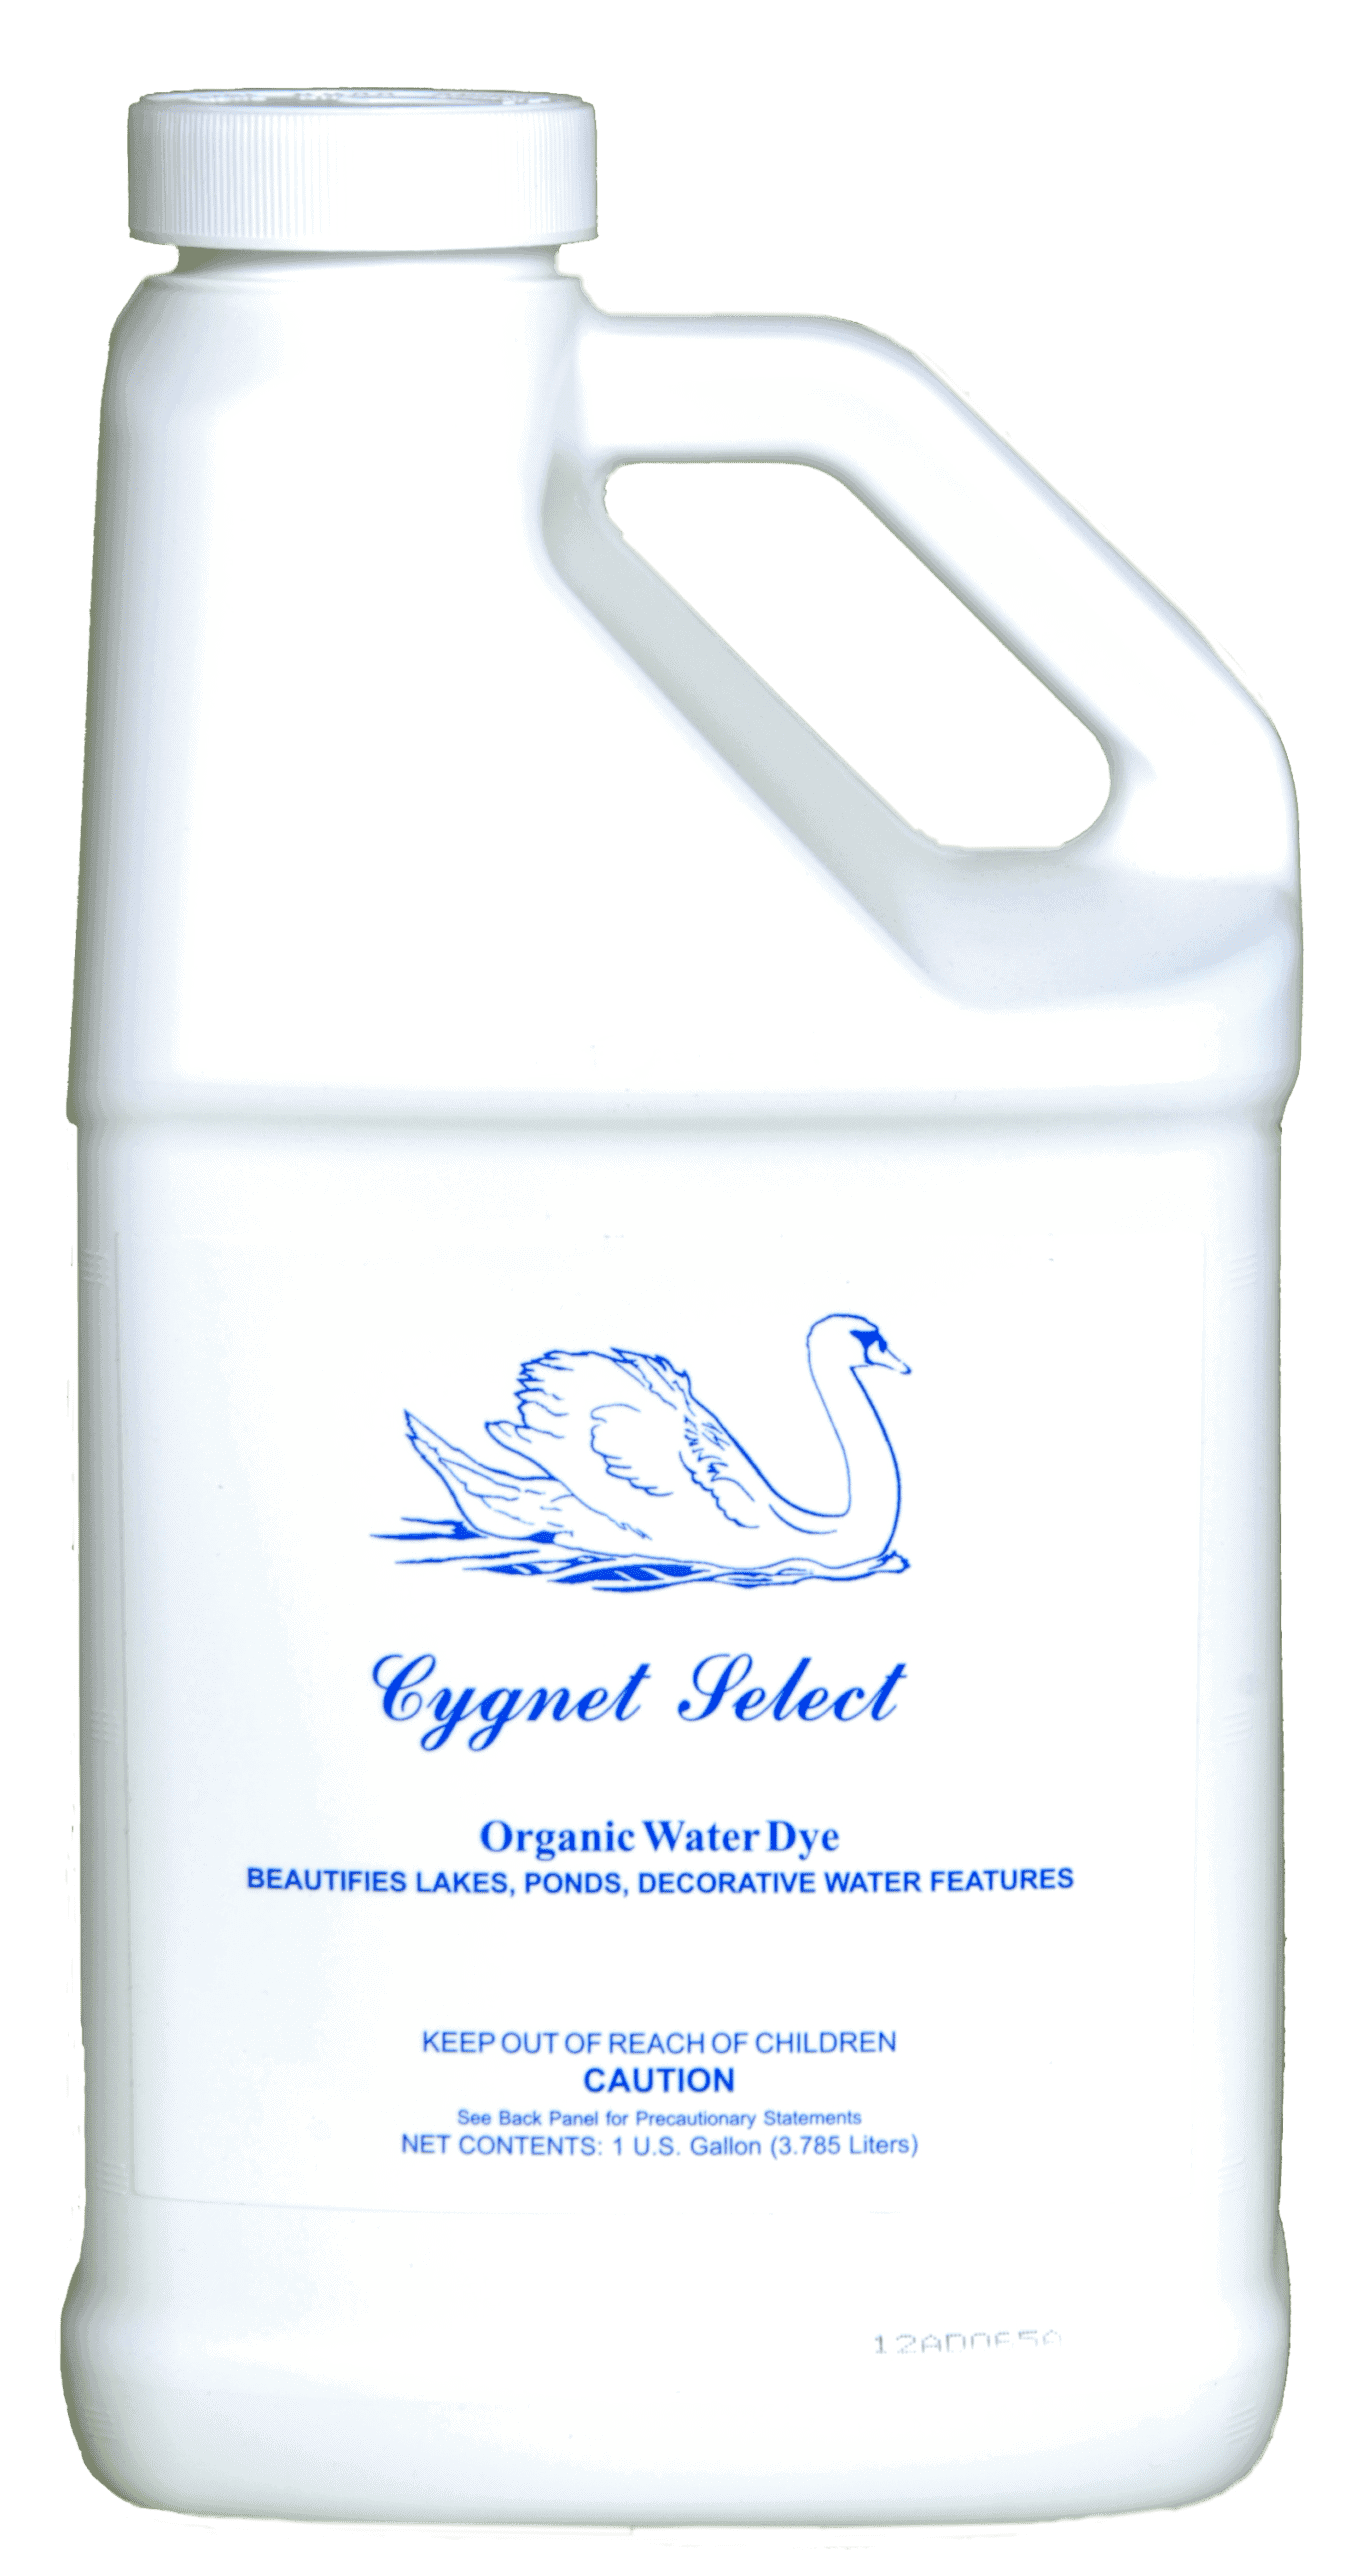 Cygnet Select Organic Water Dye